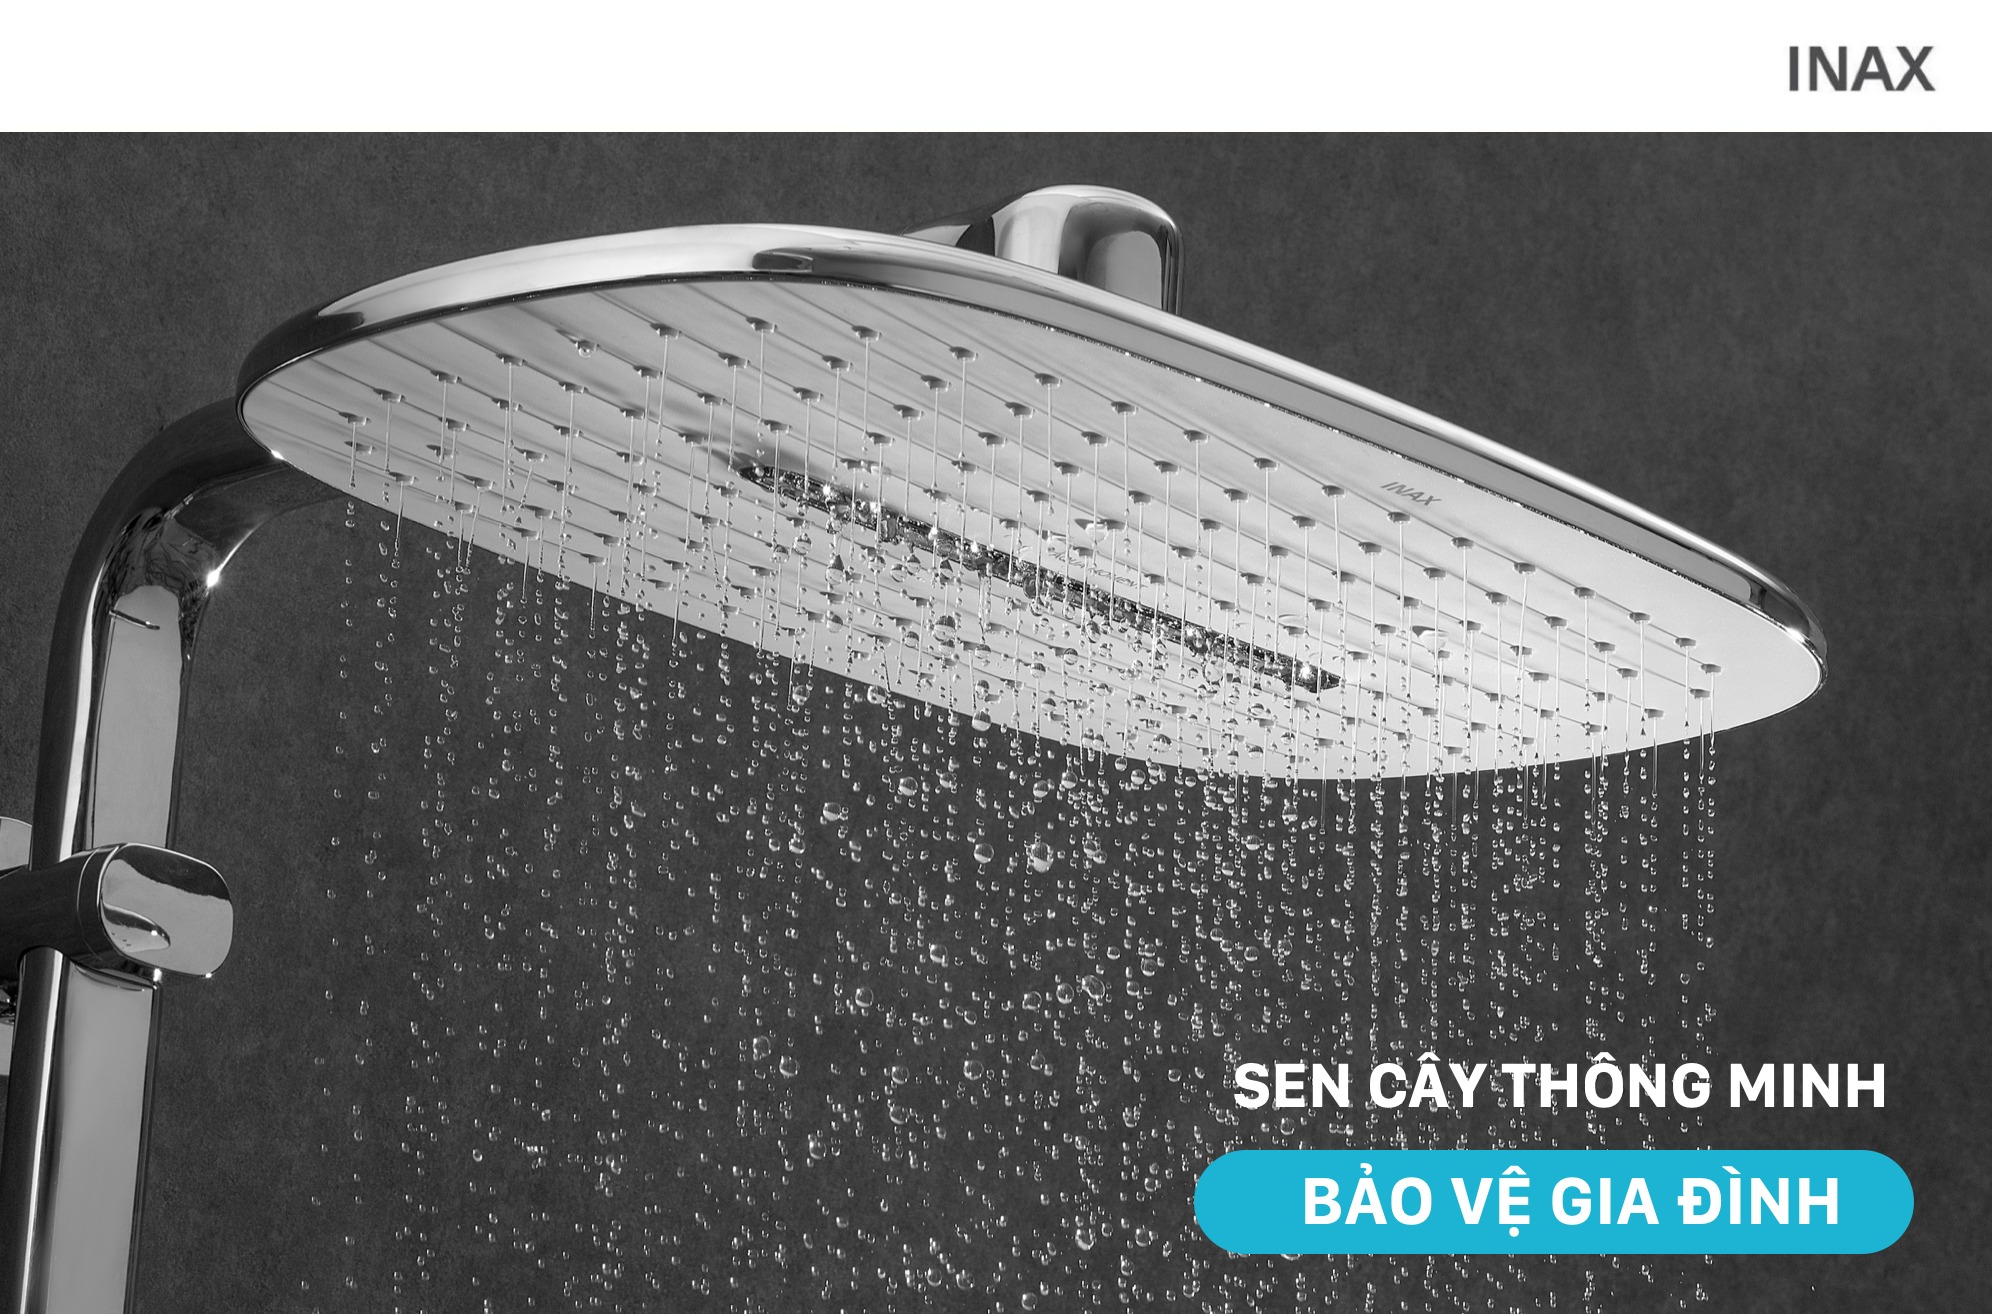 Với thiết kế độc đáo và tiện nghi, bồn tắm đứng INAX sẽ mang đến cho bạn cuộc tắm trọn vẹn cùng sự thoải mái và thư giãn. Hãy xem qua những bức hình này để tìm hiểu thêm về sản phẩm.